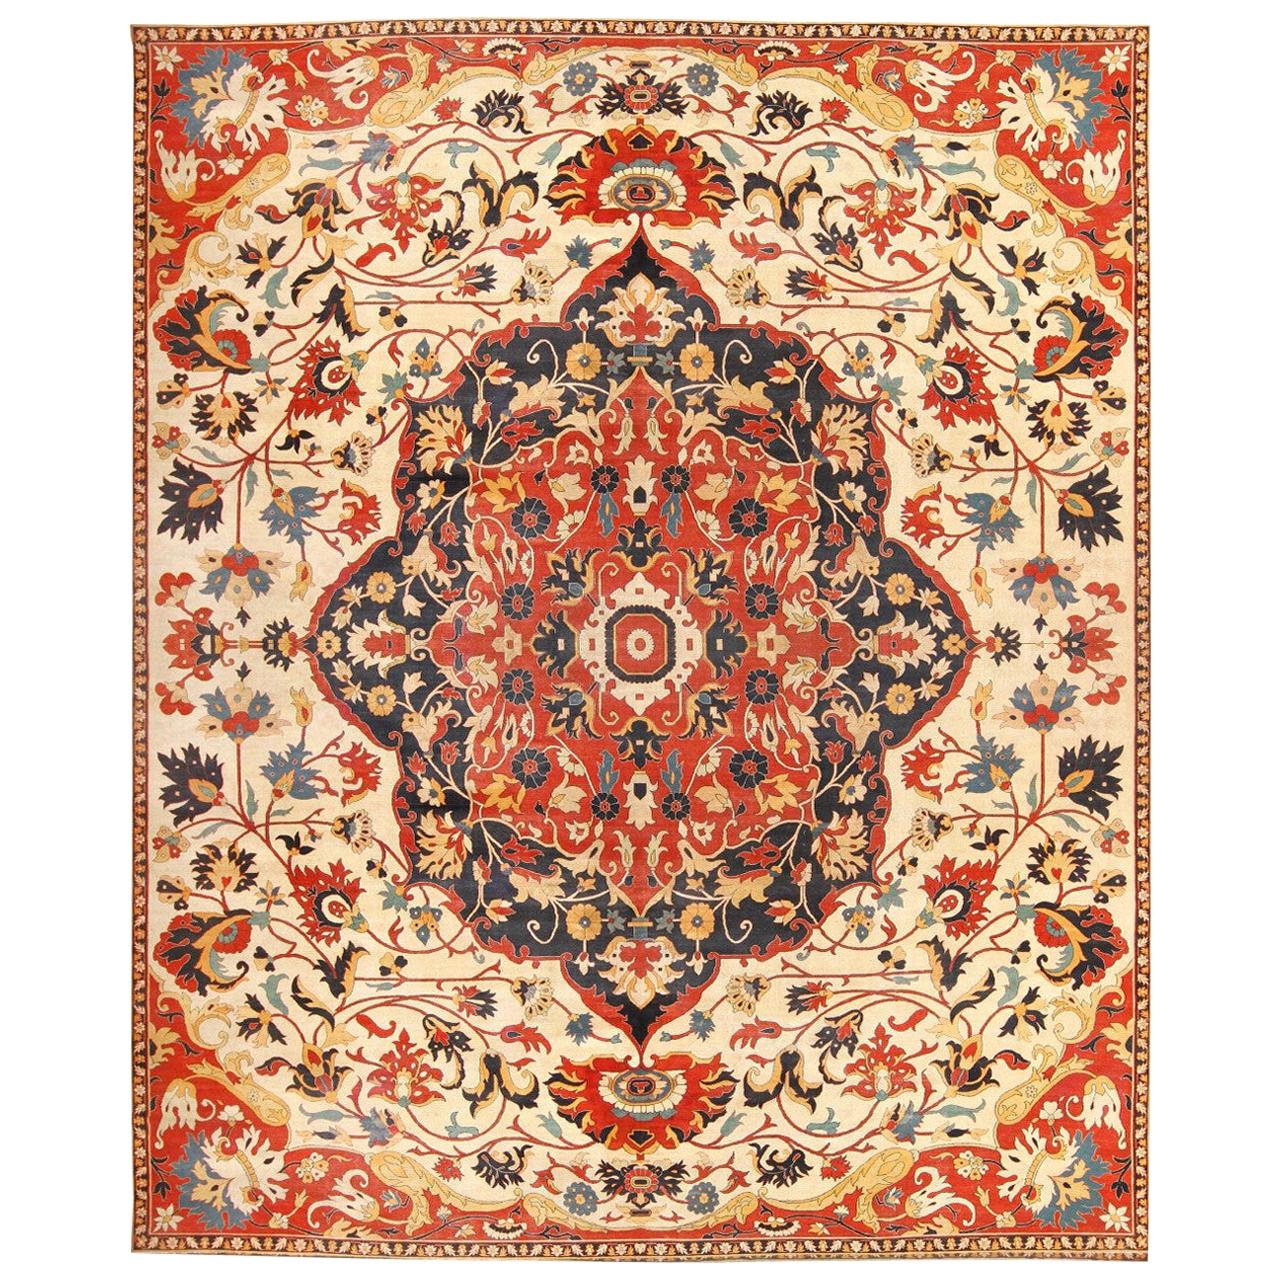 Nazmiyal Antique Persian Sarouk Farahan Carpet. Size: 19 ft 3 in x 23 ft 3 in